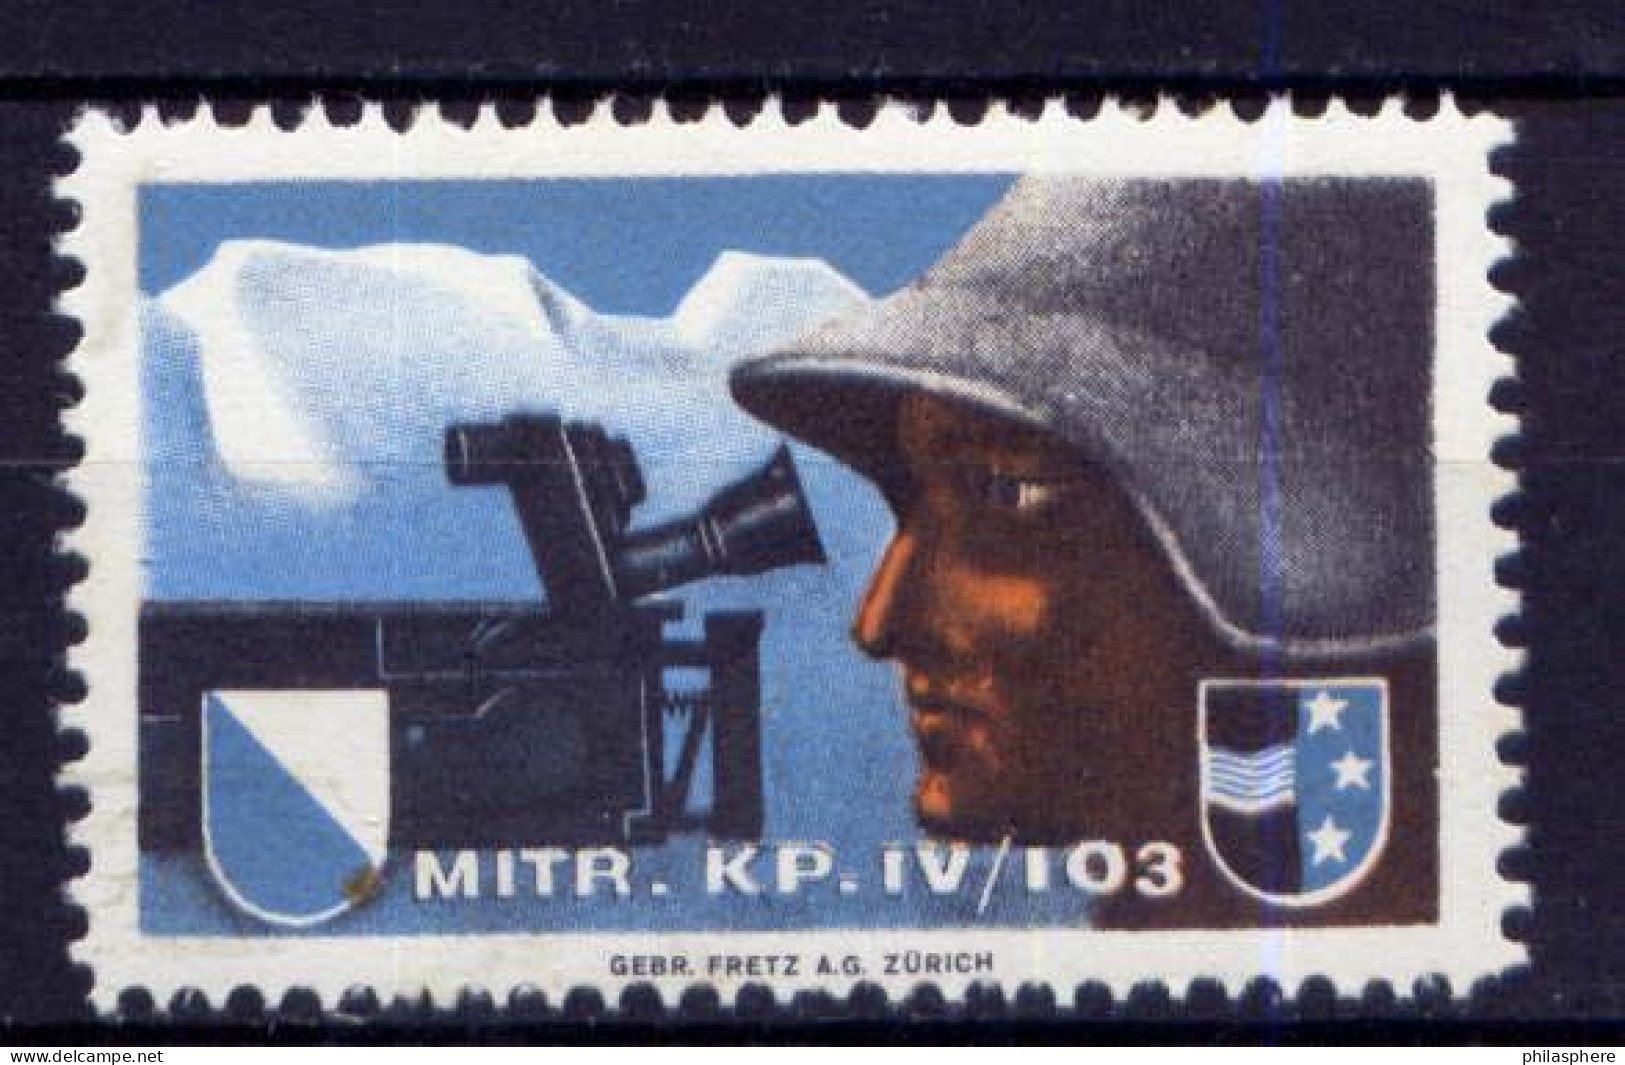 Schweiz  Soldatenbriefmarke             **  MNH            (2139) - Vignettes